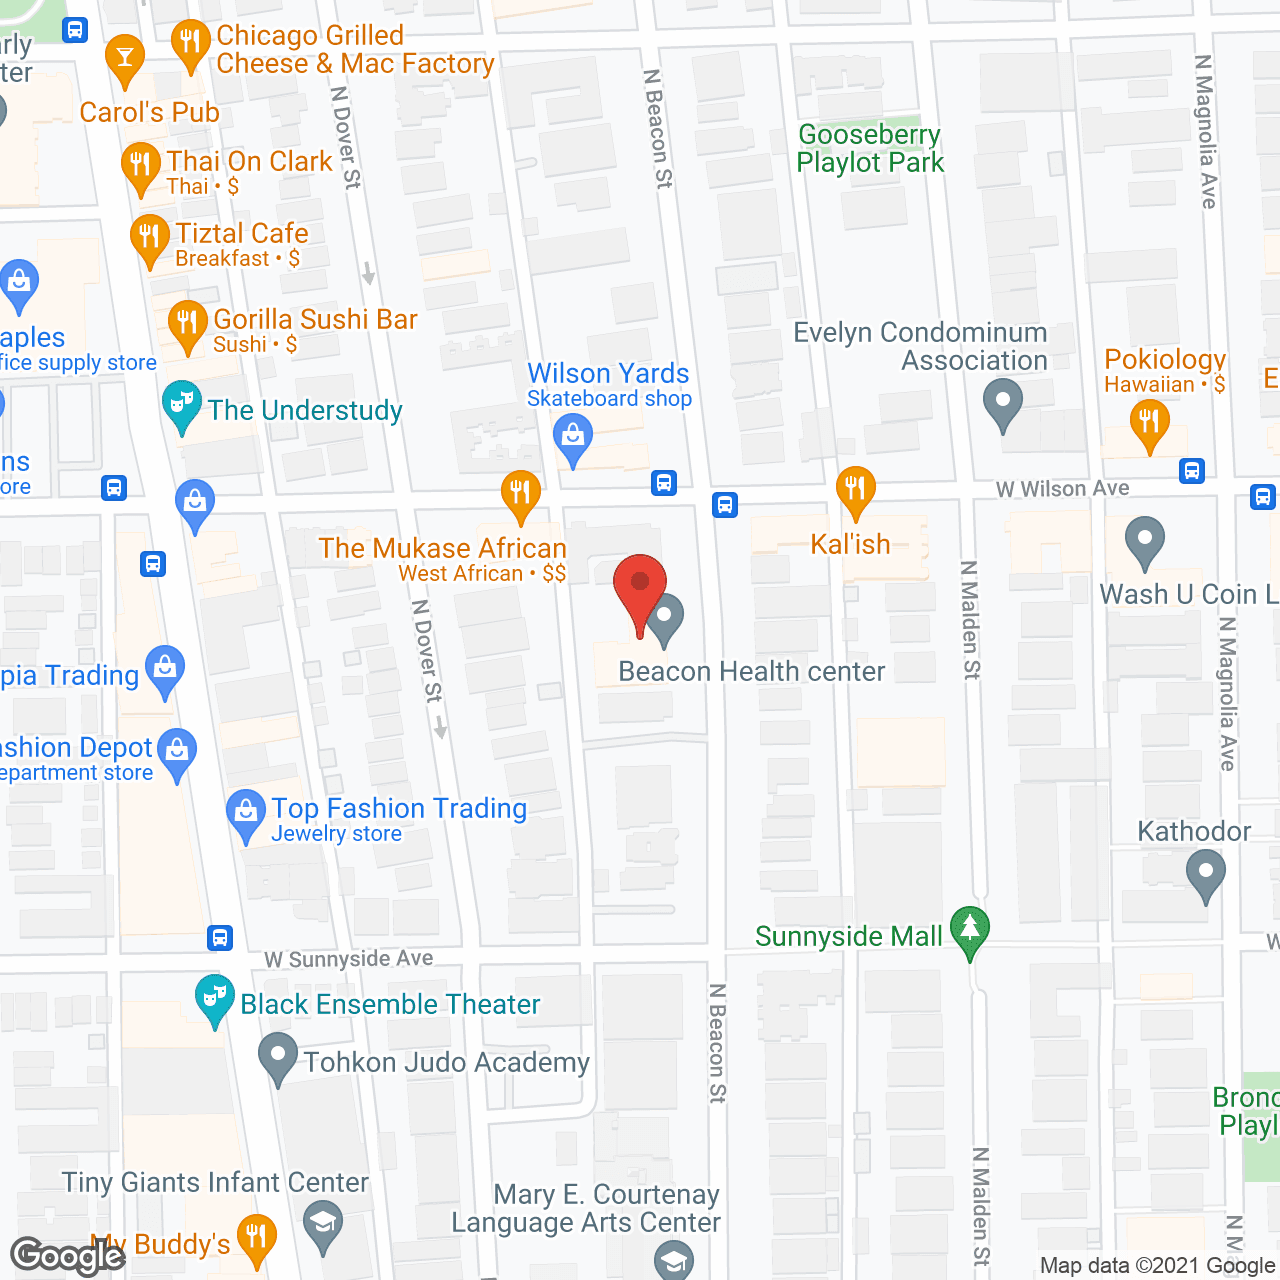 Beacon Care Center in google map